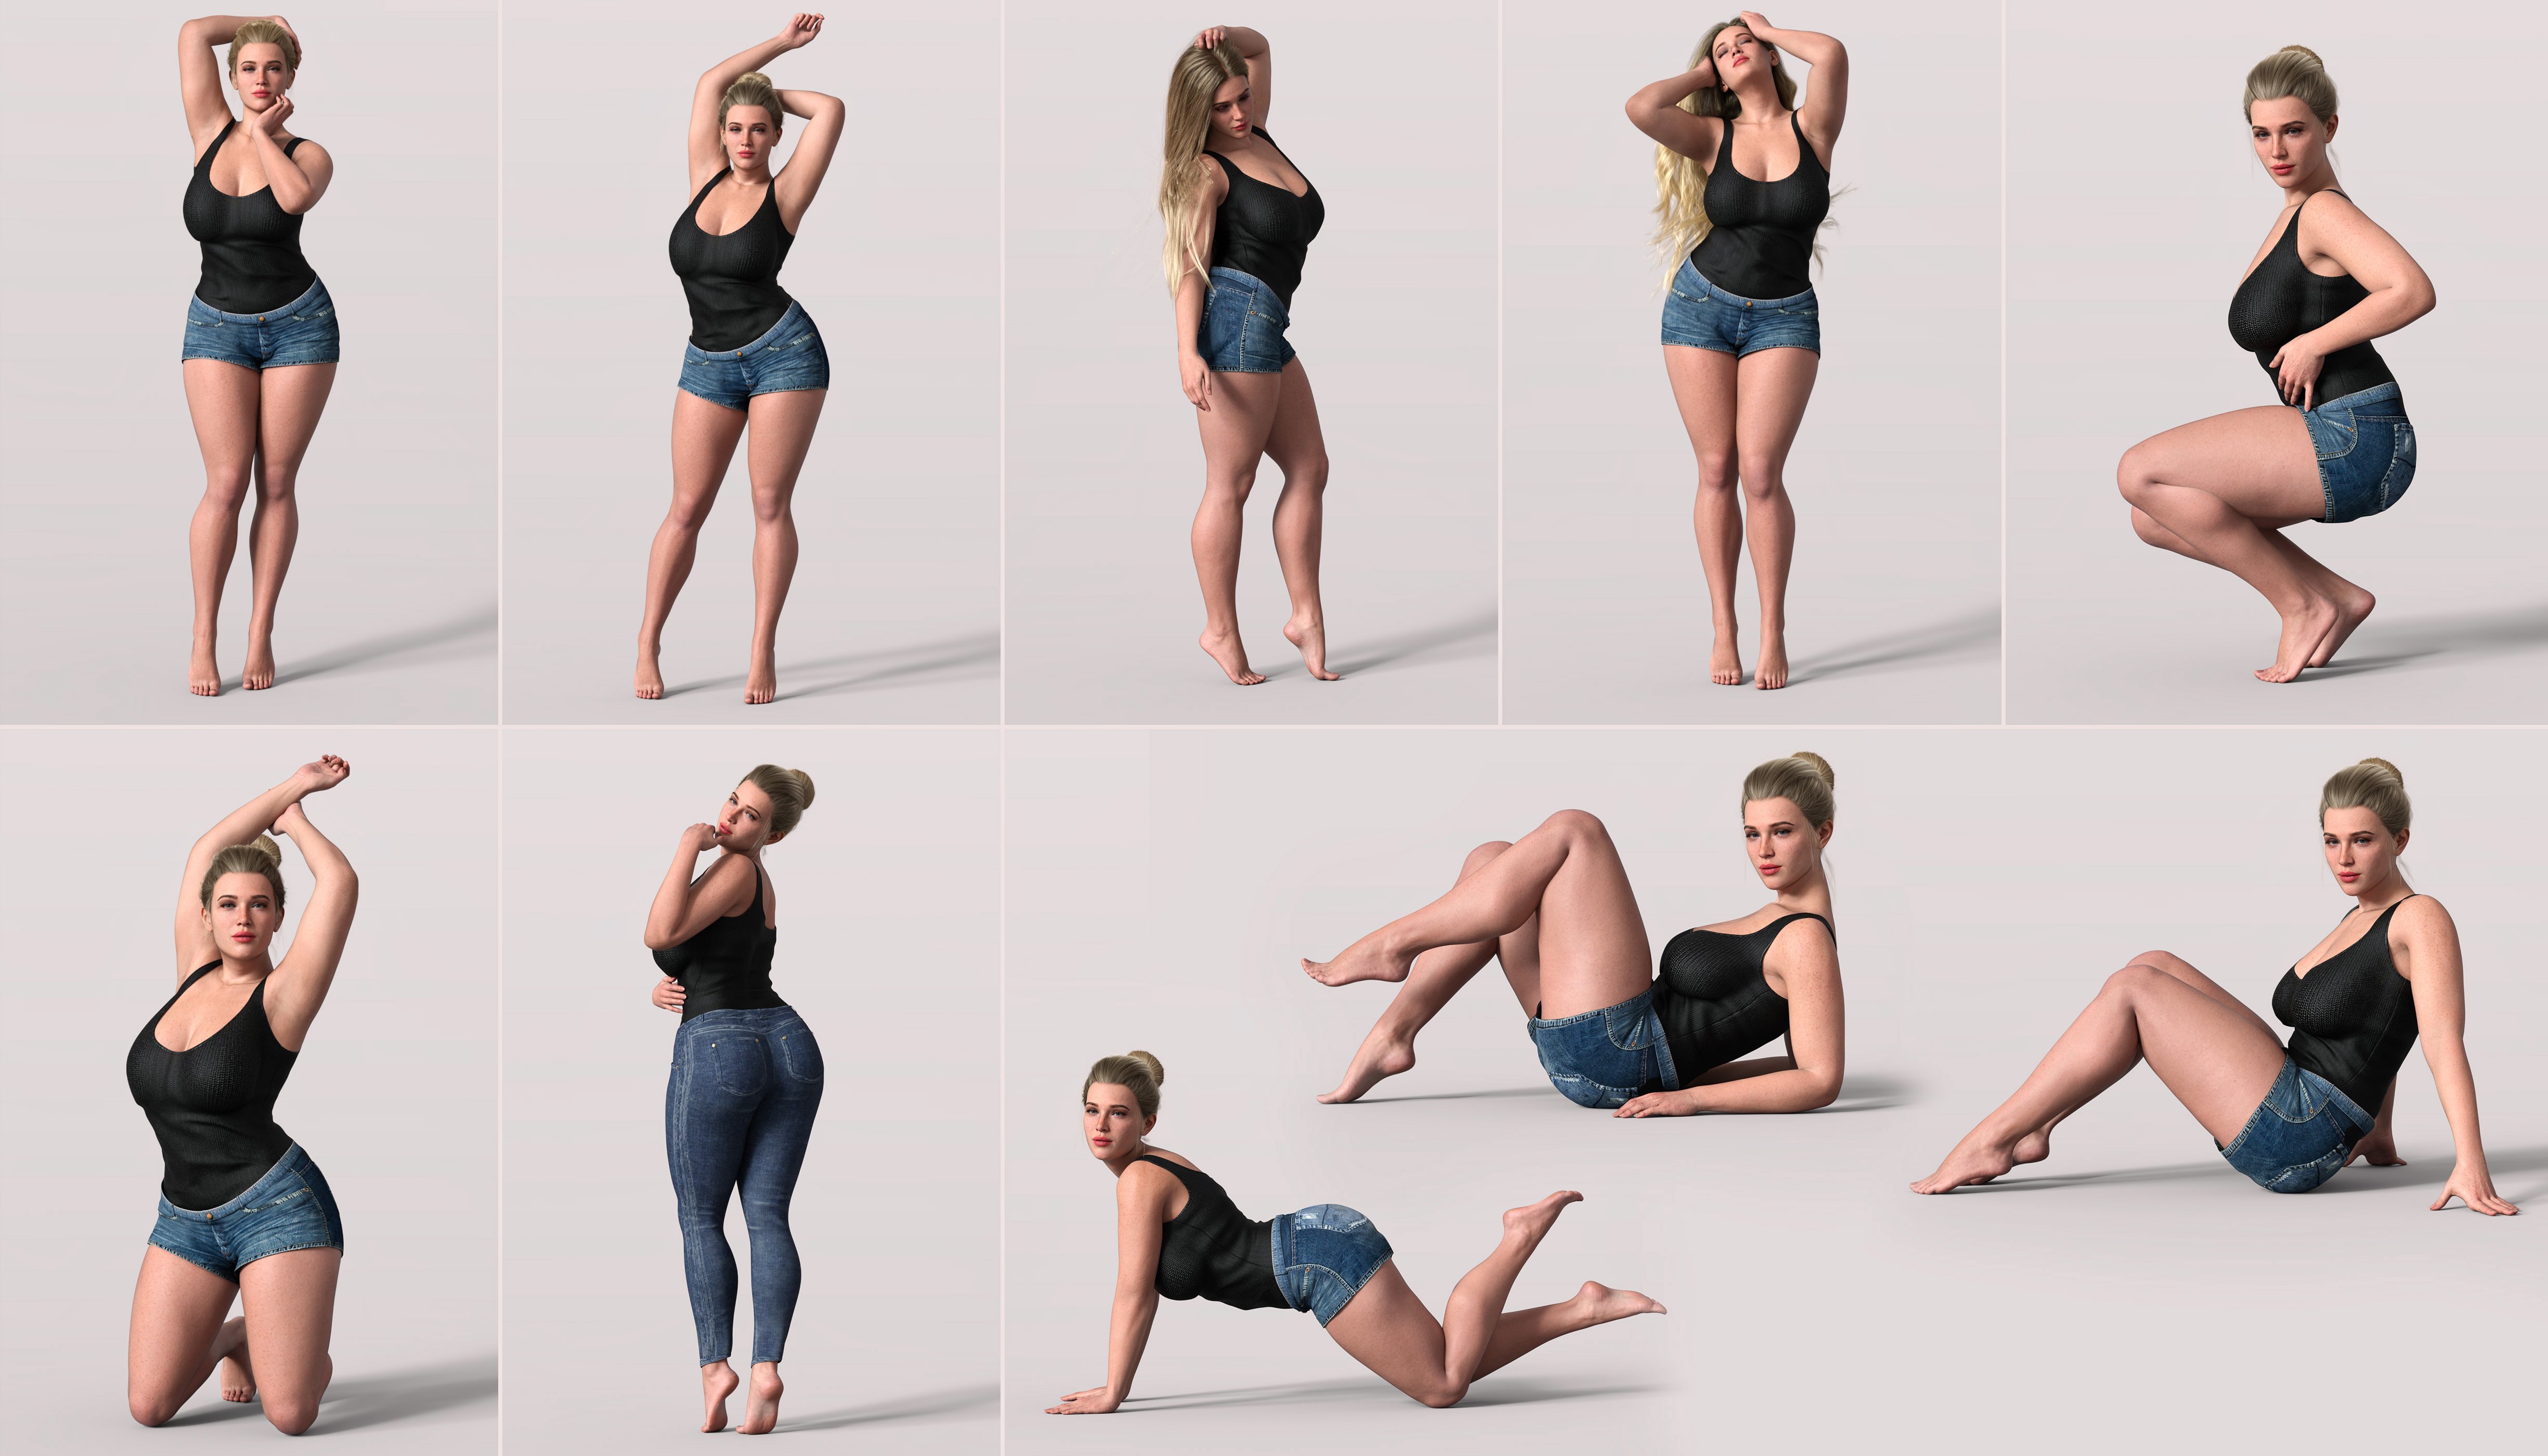 Z Voluptuous Model Shape and Pose Mega Set by: Zeddicuss, 3D Models by Daz 3D